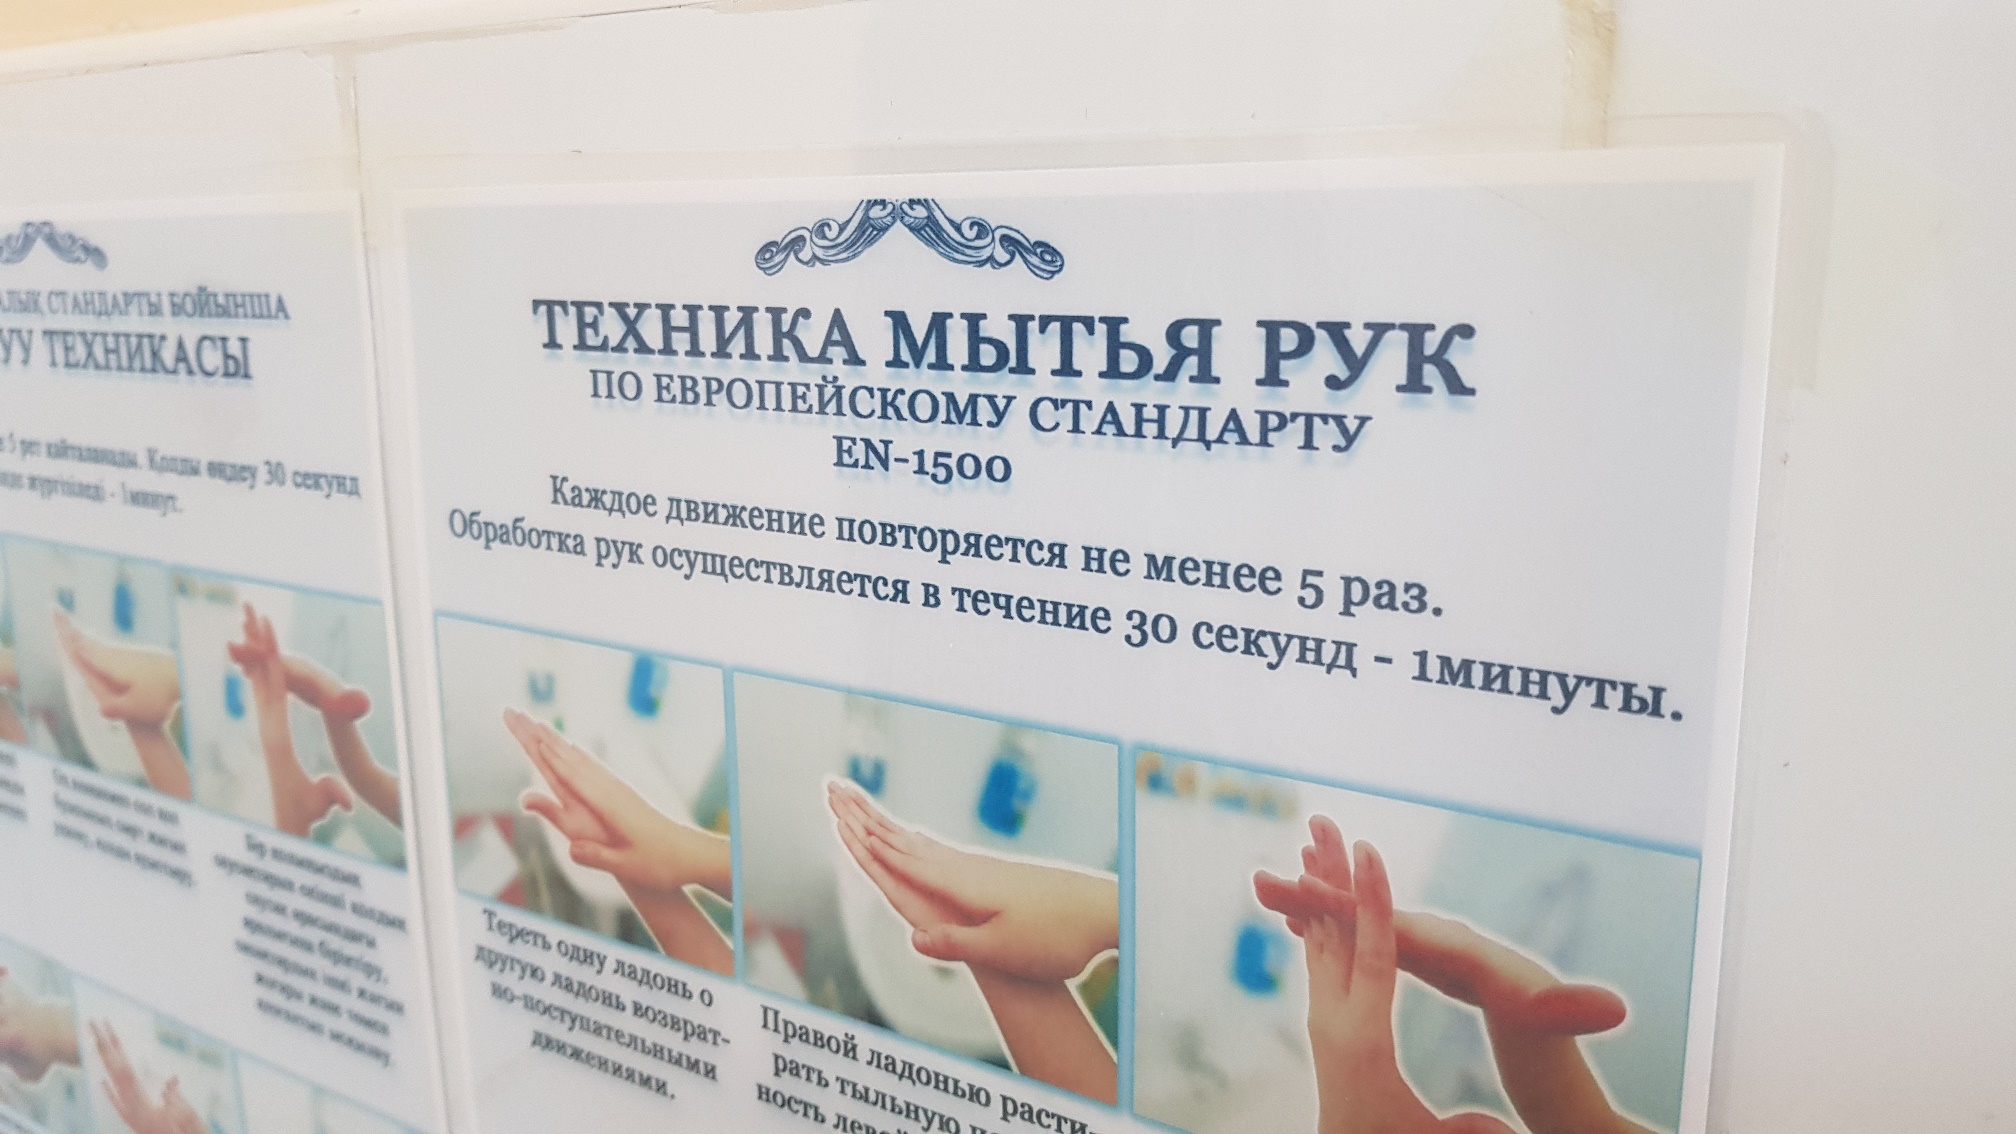 Стандарты гигиенической обработки рук. Европейский стандарт мытья рук en-1500. 111 Приказ МЗ РК мытье рук. Техника обработки рук Европейский стандарт en-1500. Гигиеническая обработка рук Ен 1500.